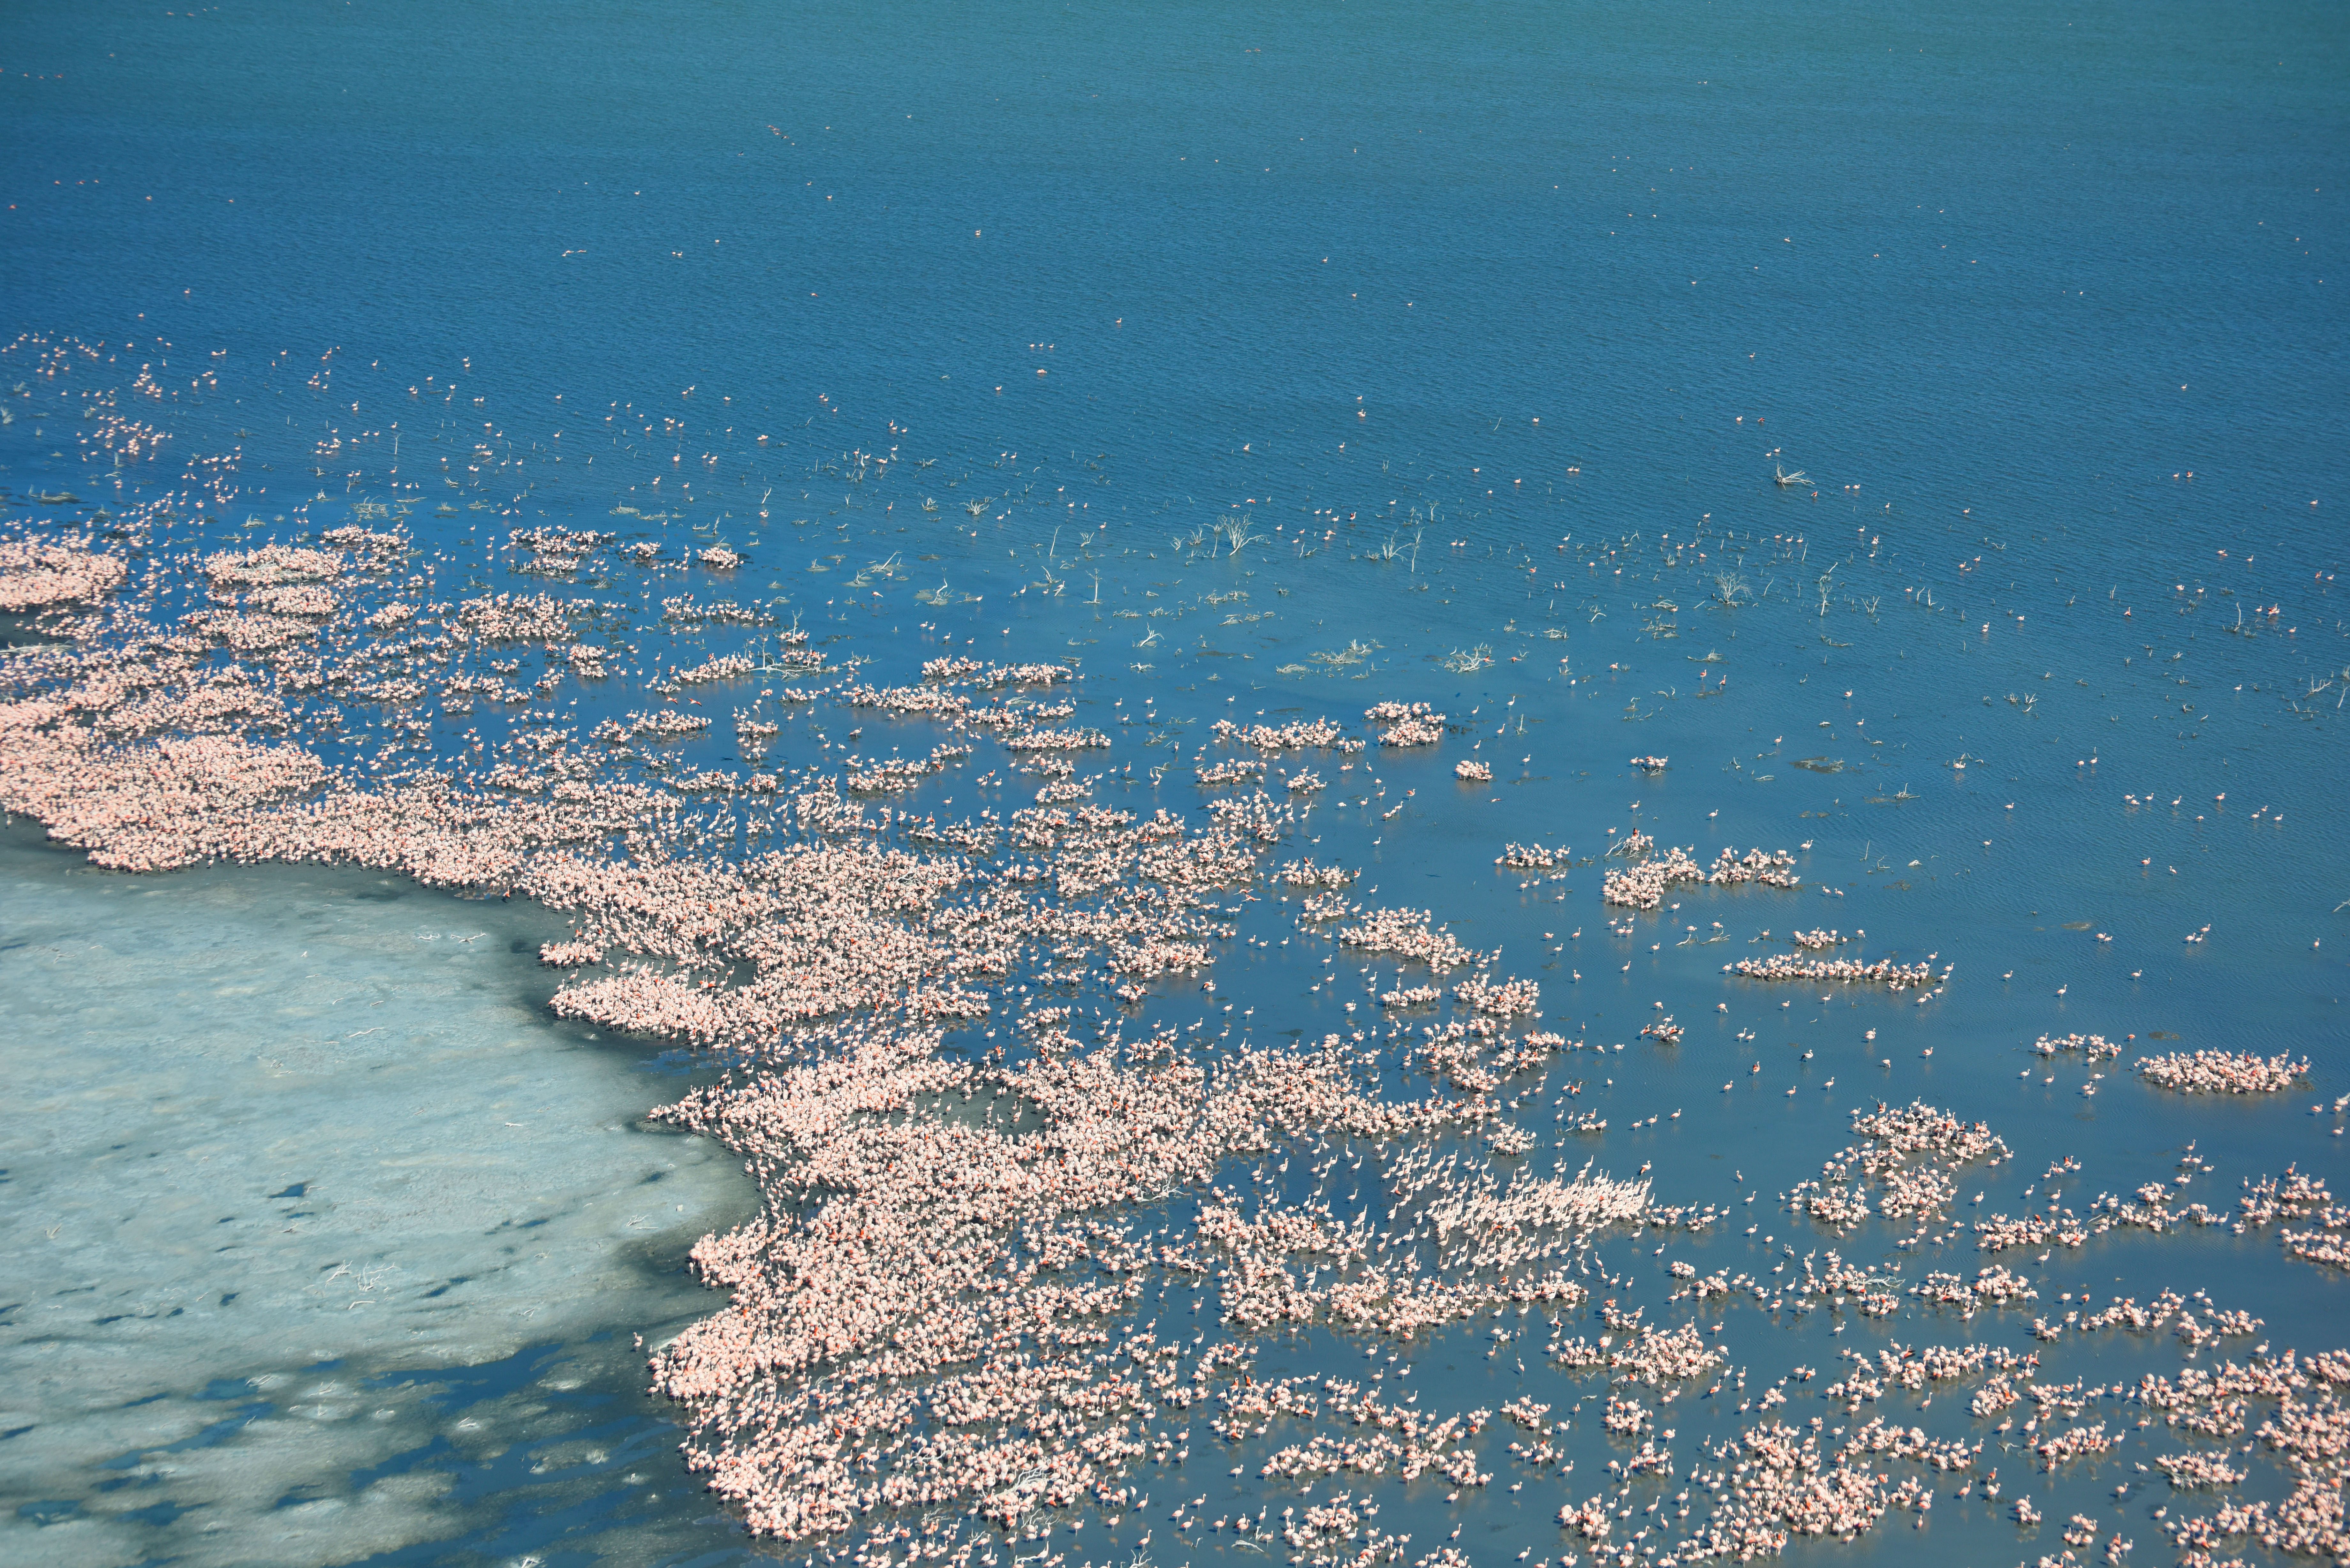 Un lago azul profundo bordeado de sal está decorado por el rosa de miles de flamingos